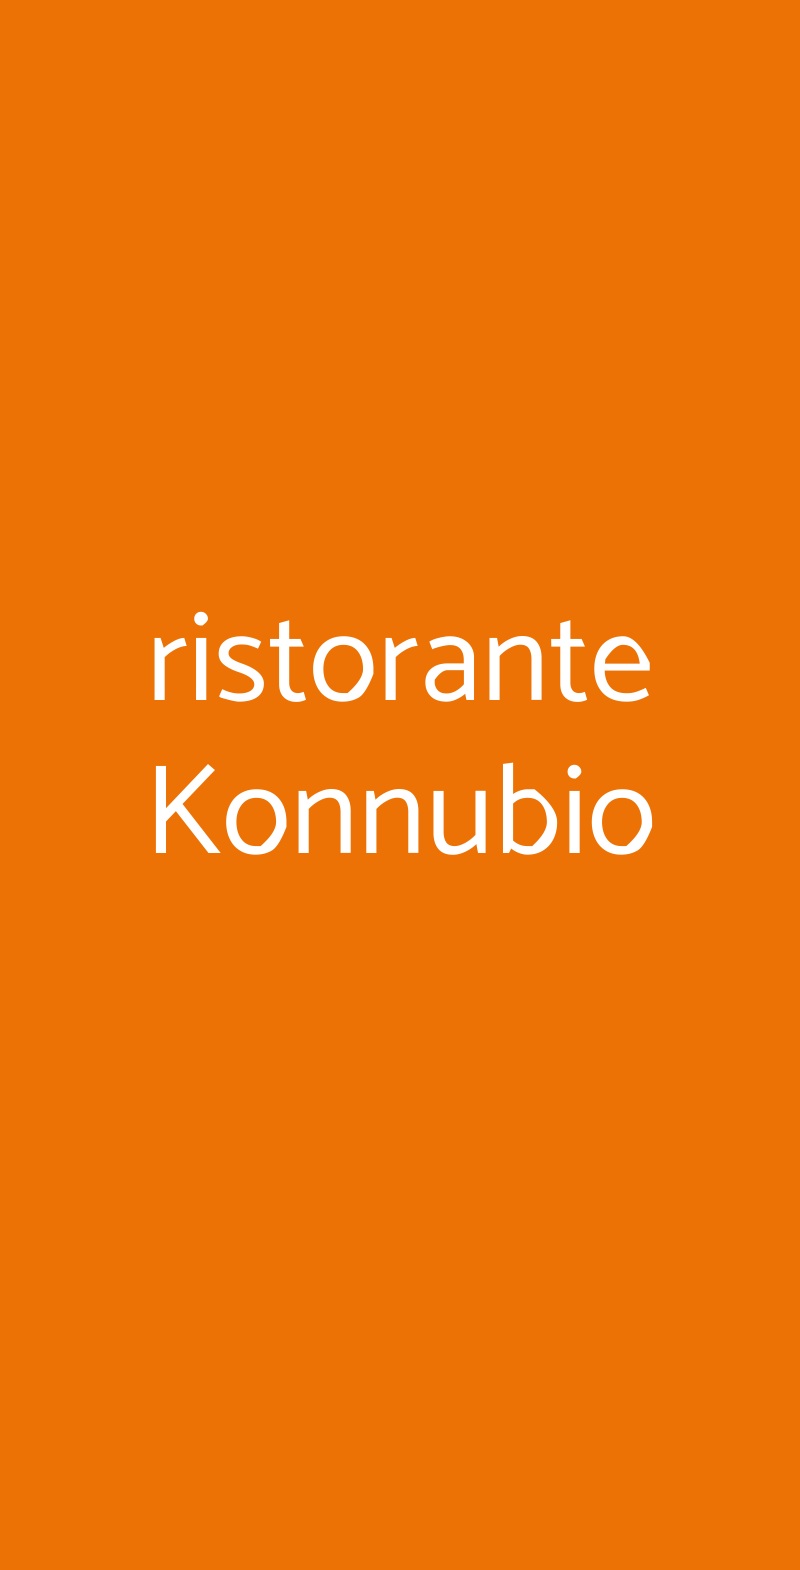 ristorante Konnubio Arenzano menù 1 pagina